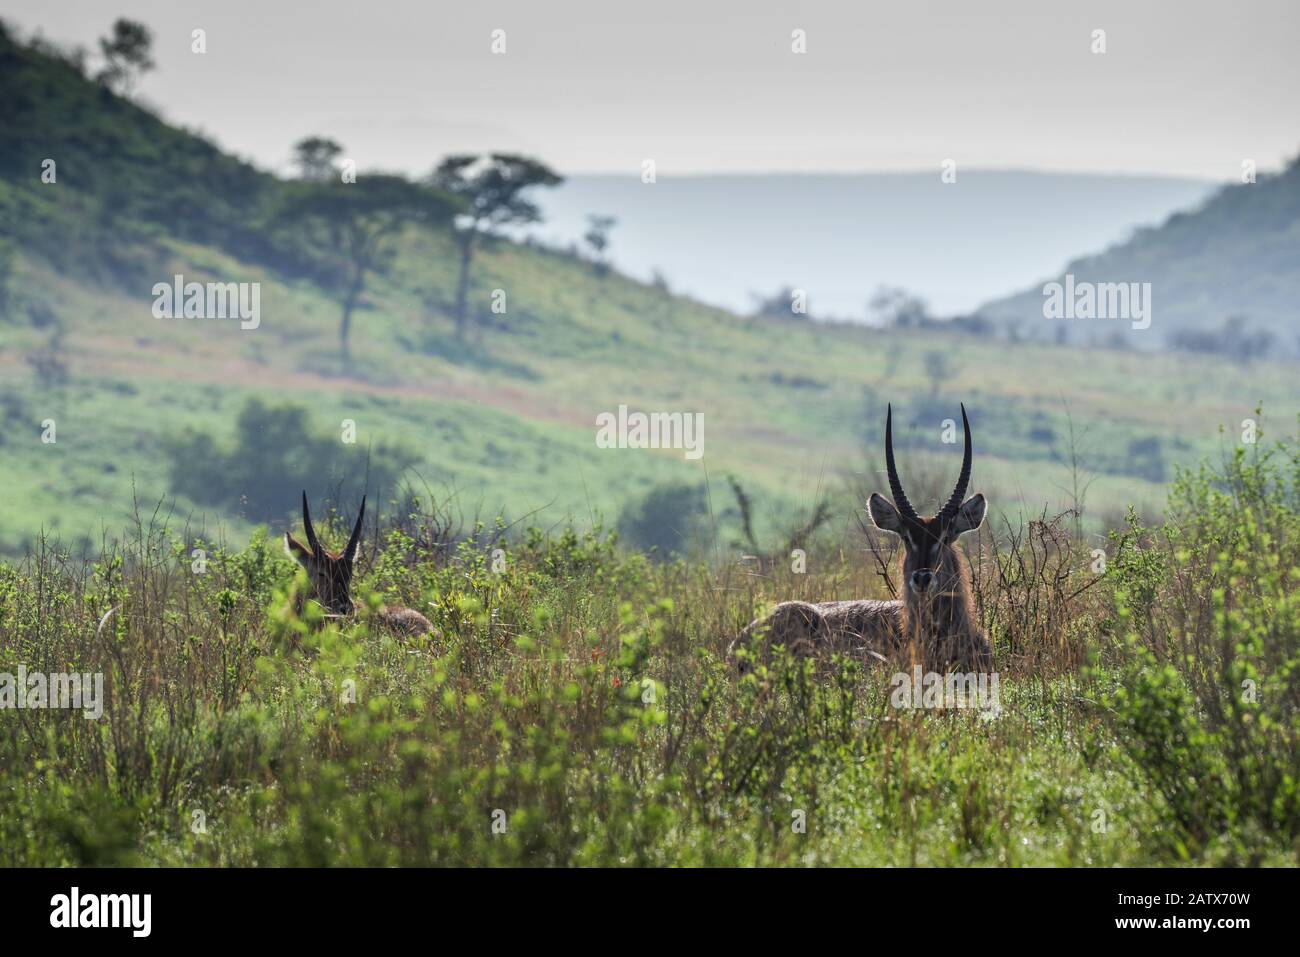 Paar männliche Wasserböcke, die an einem nebligen Morgen im Gras ruhen - Nambiti Private Game Reserve (Kwazulu Natal, Südafrika) Stockfoto